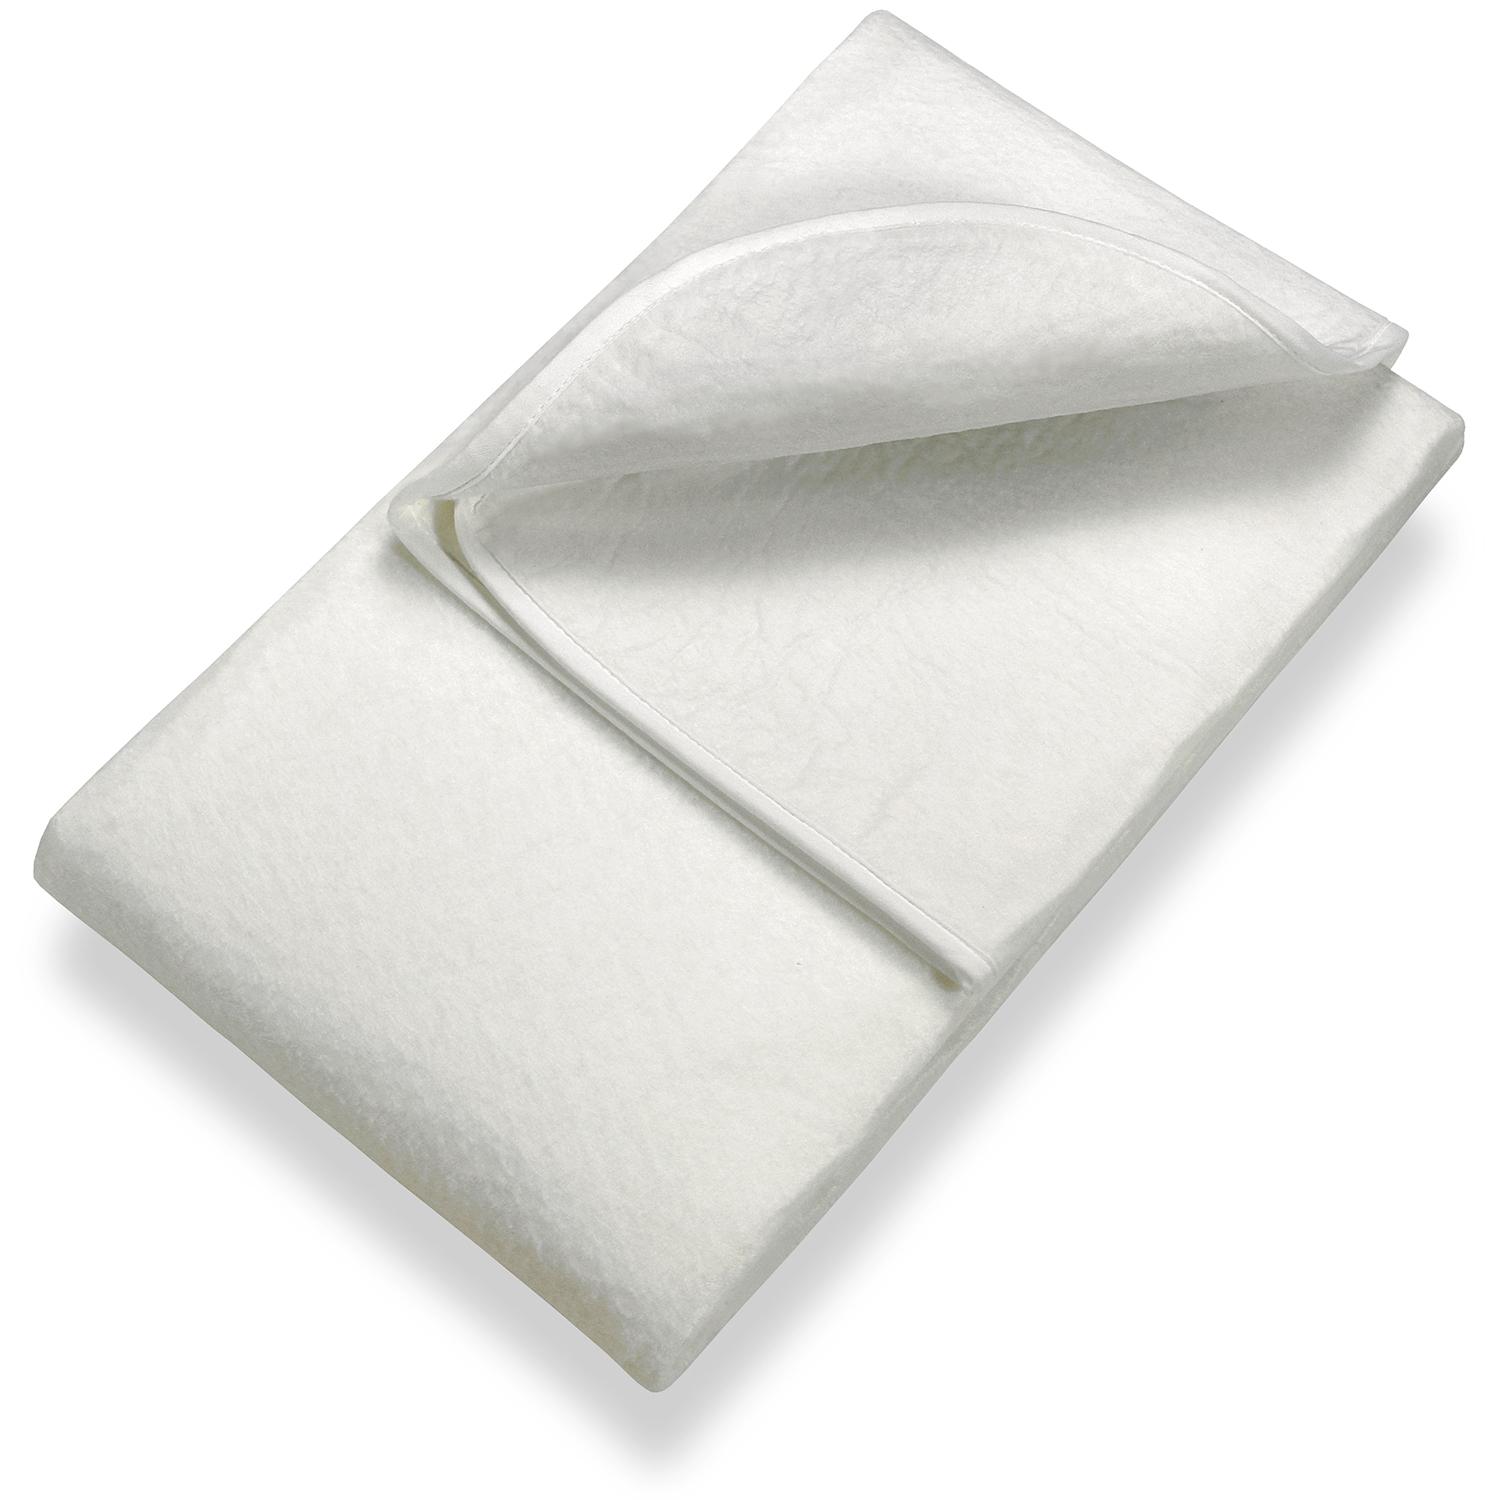 Sleezzz Basic tűfilc matracbetét 90 x 190 cm, matracvédő a léckeretre helyezhető, fehér színű